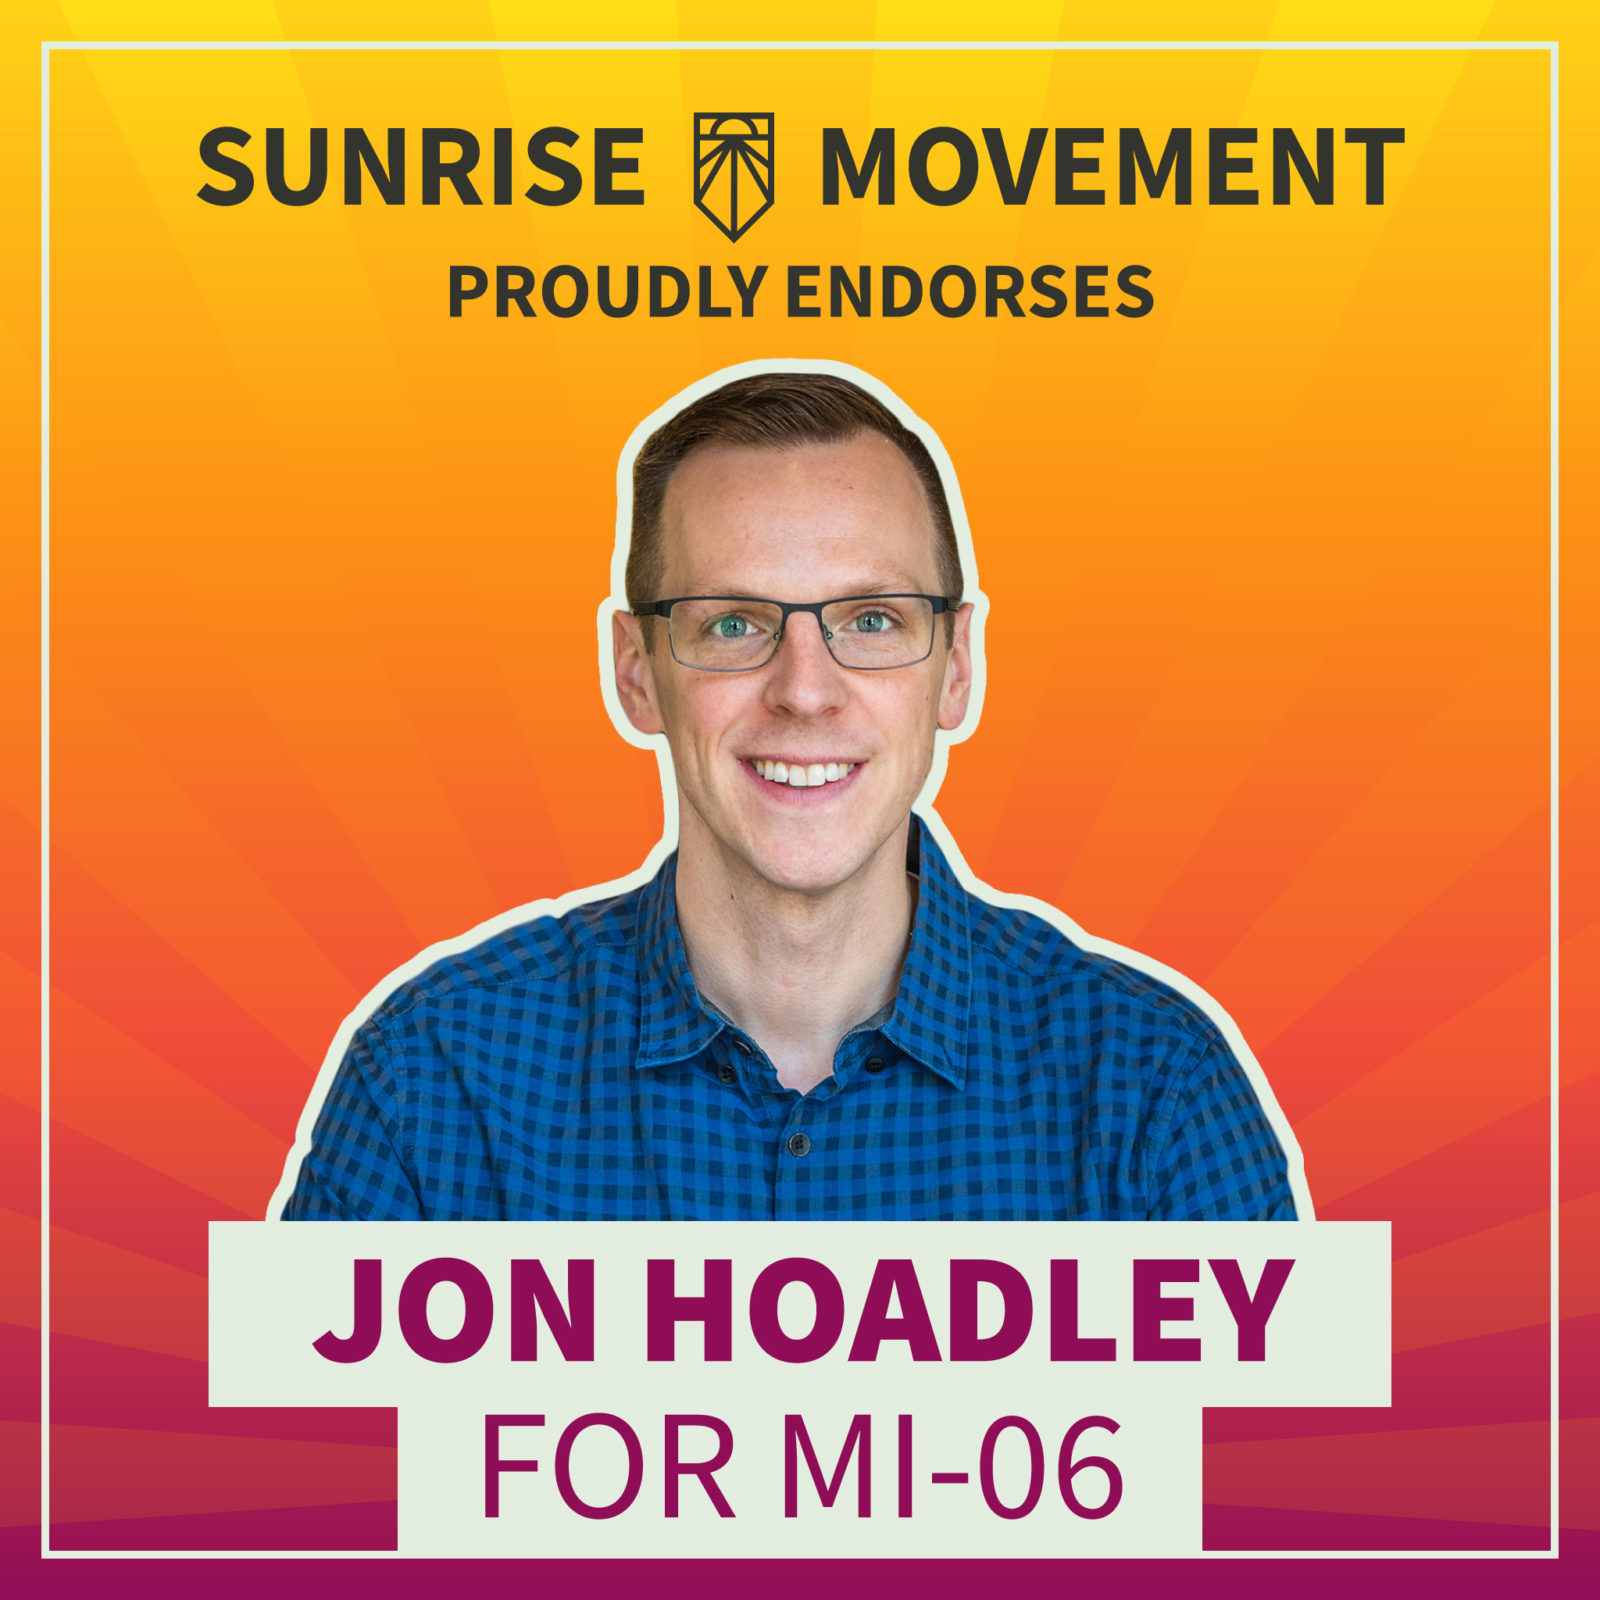 Una foto de Jon Hoadley con texto: Sunrise Movement respalda con orgullo a Jon Hoadley para MI-06.